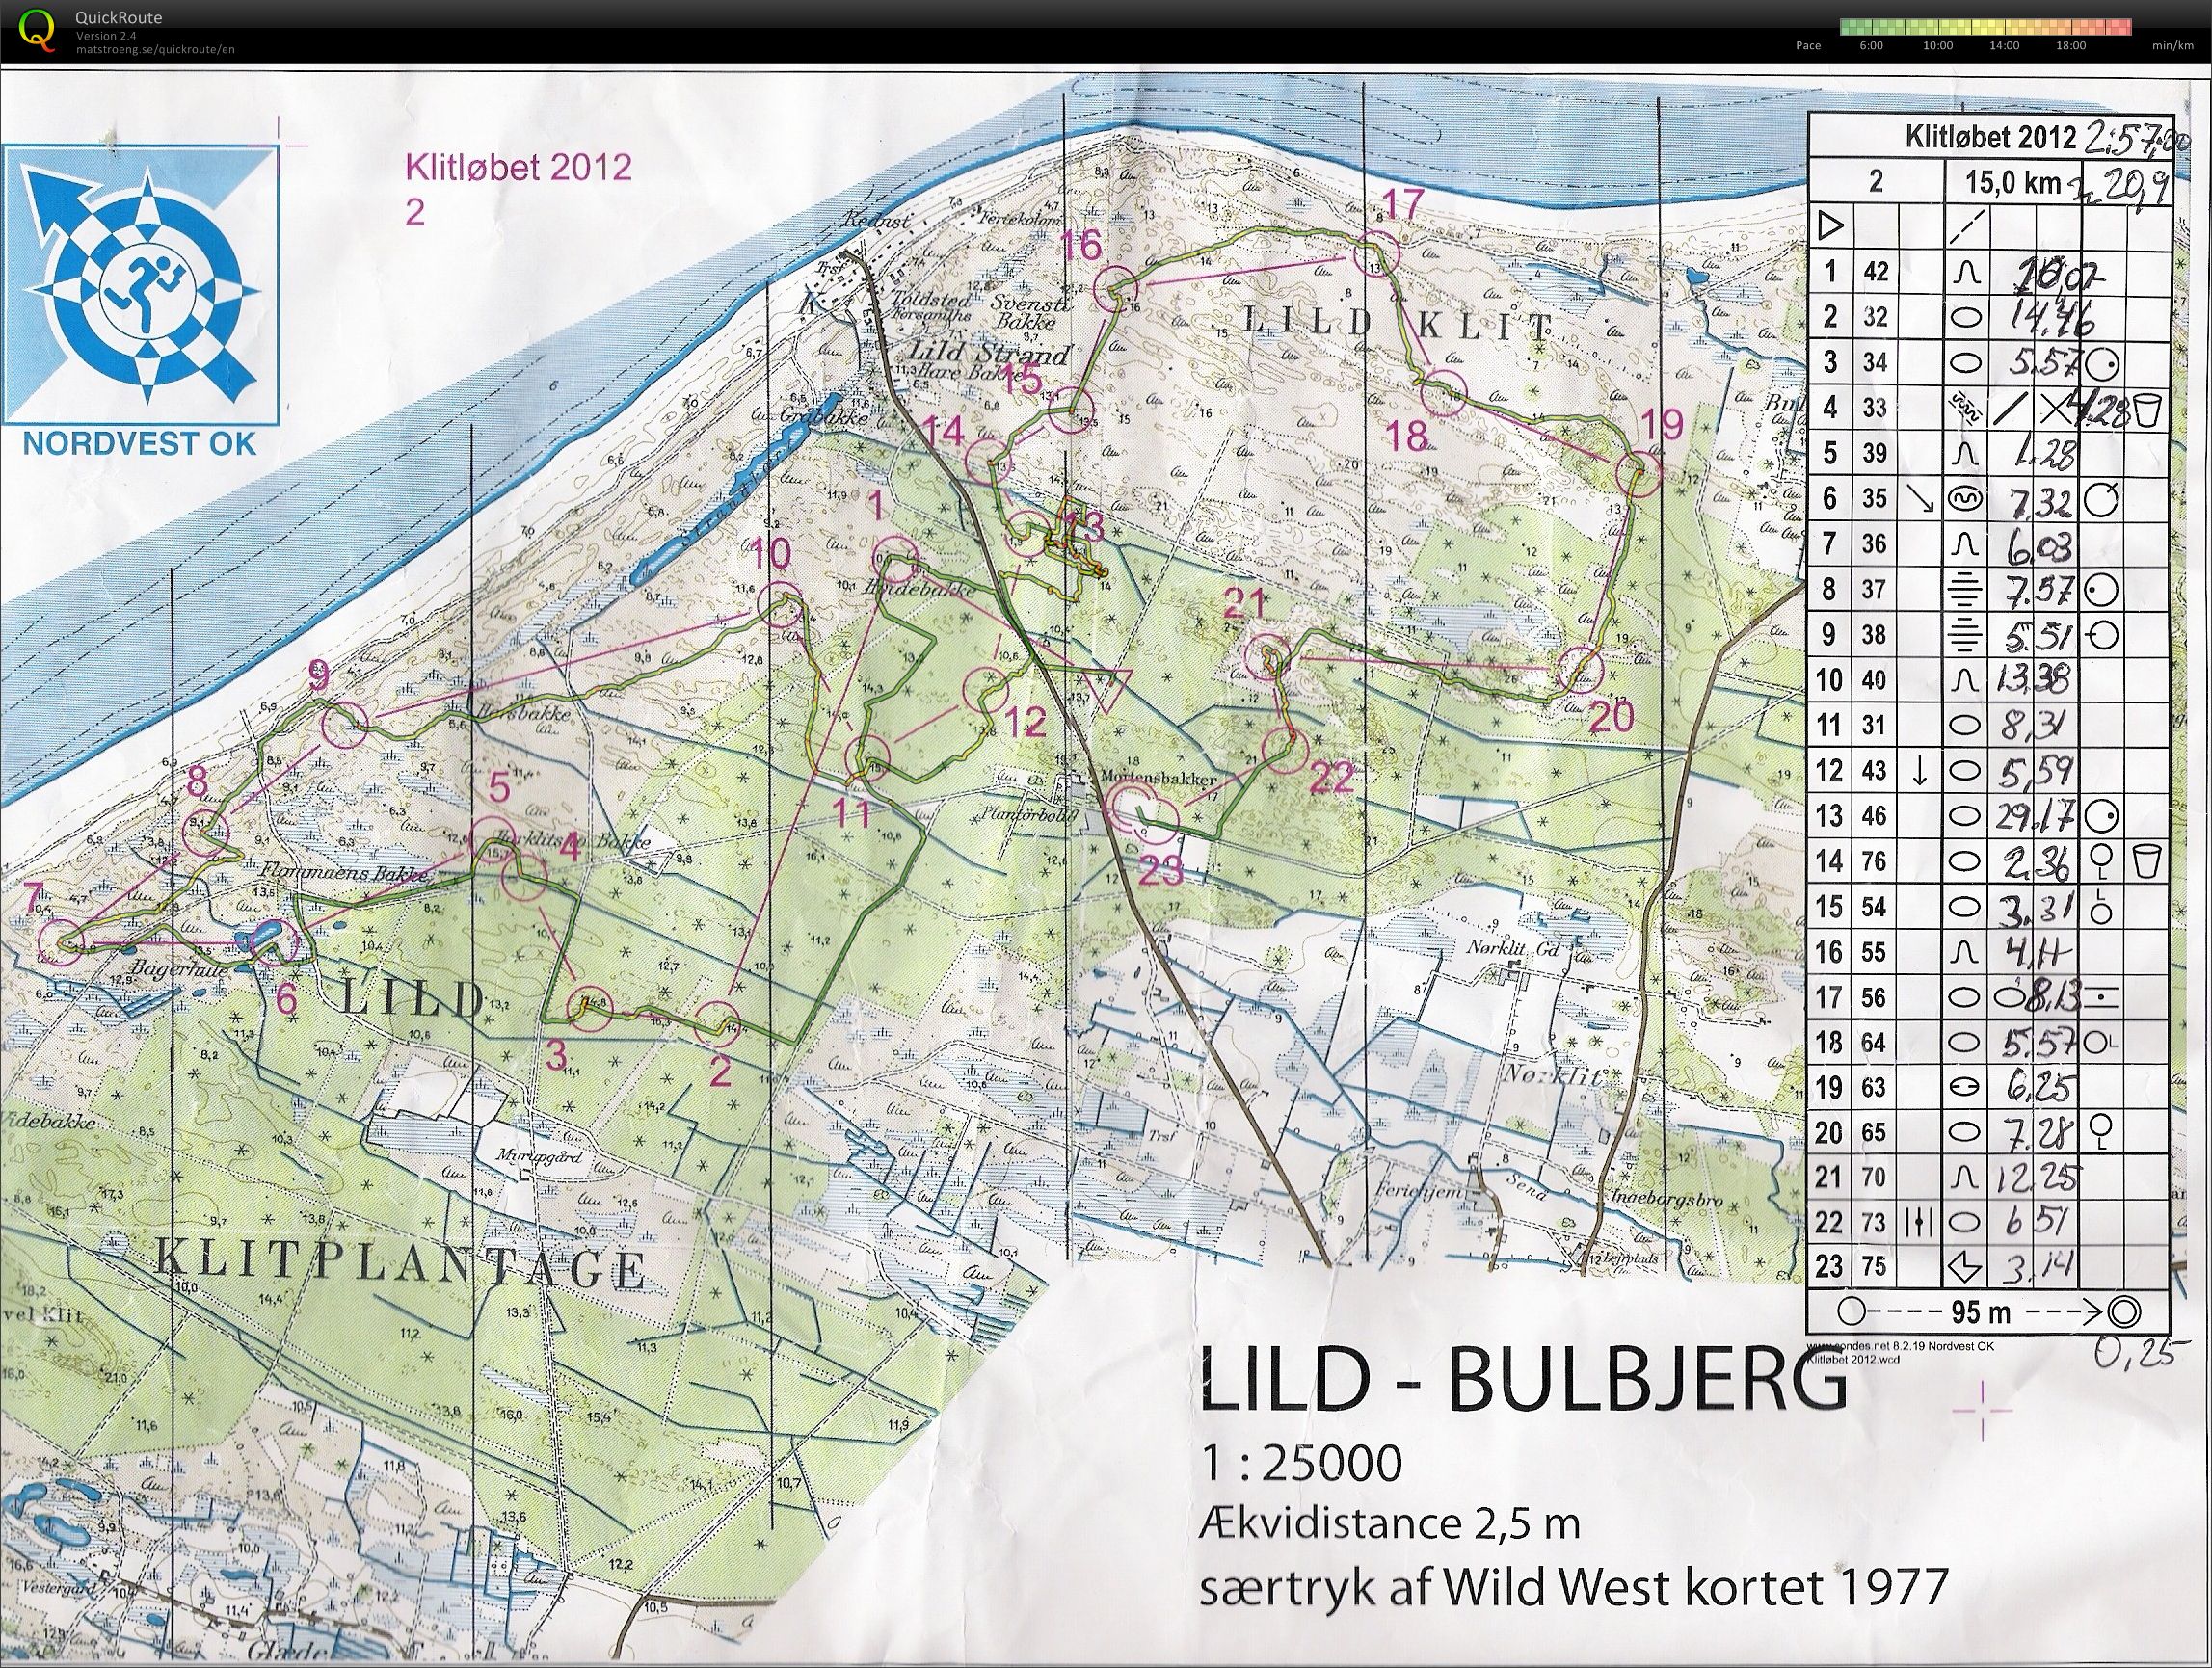 Klitløbet - Lild-Bulbjerg - 2012 (17-06-2012)